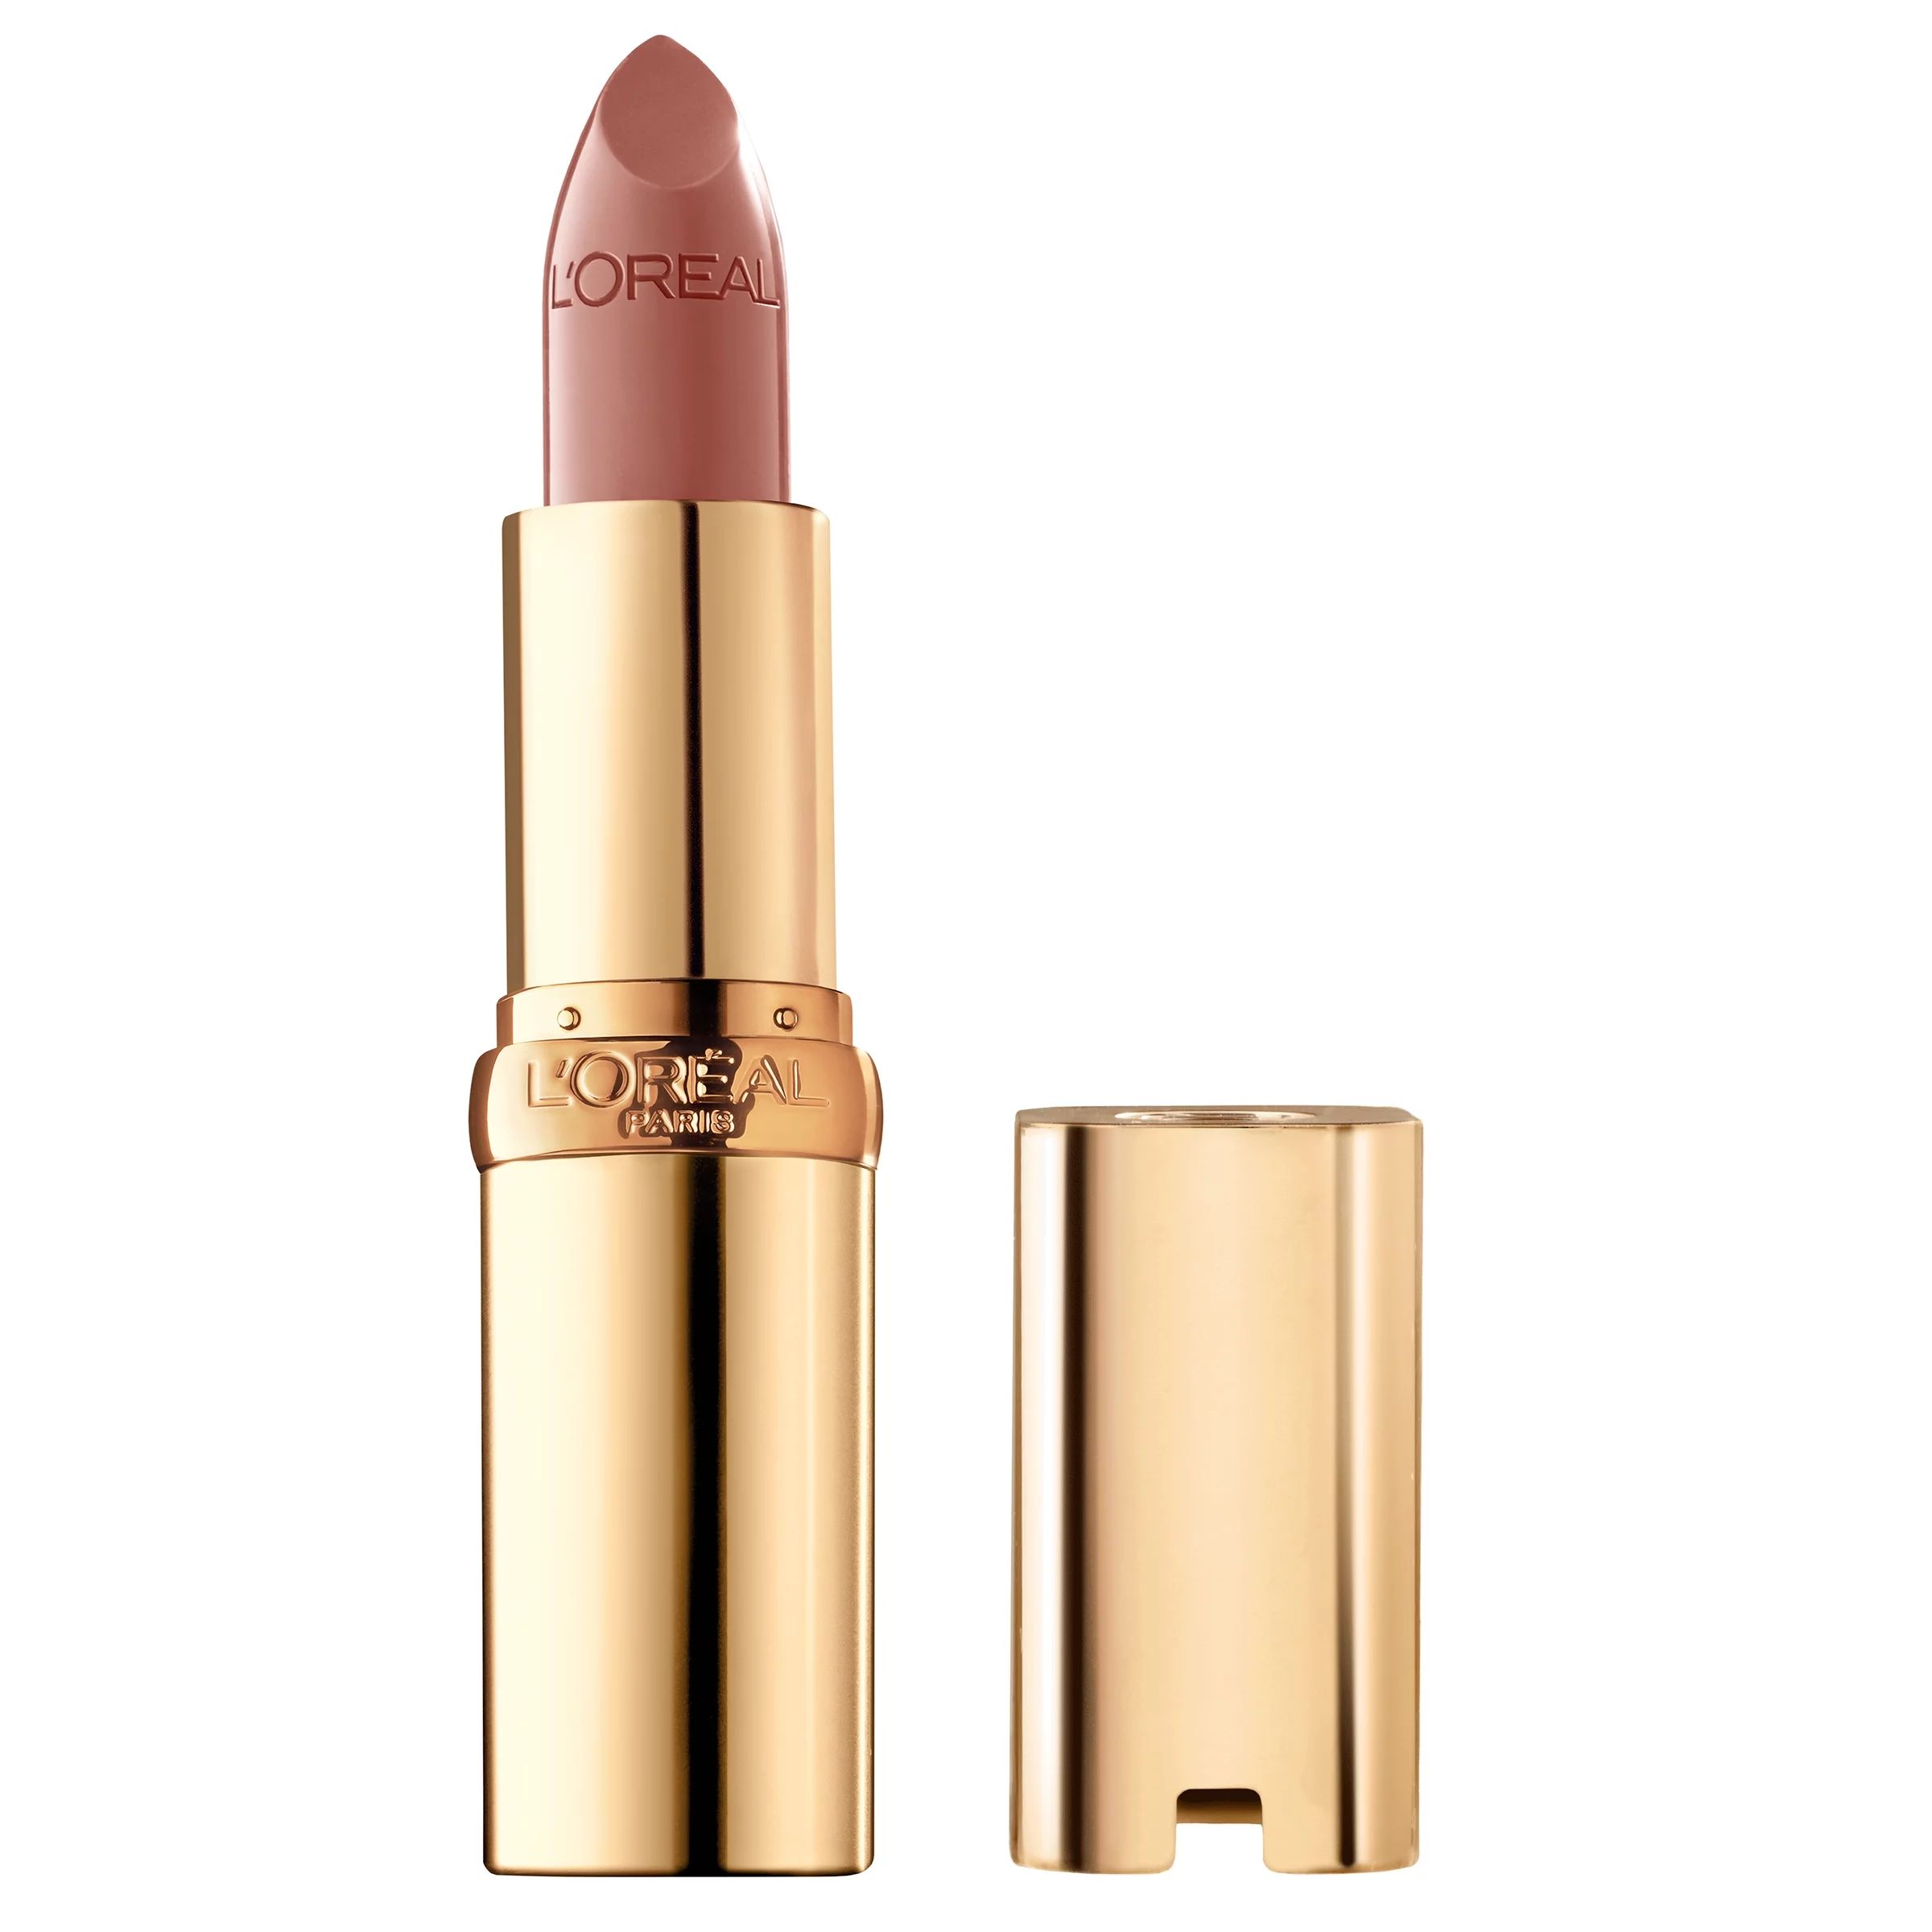 L'Oreal Paris Colour Riche Original Satin Lipstick for Moisturized Lips, Fairest Nude | Walmart (US)